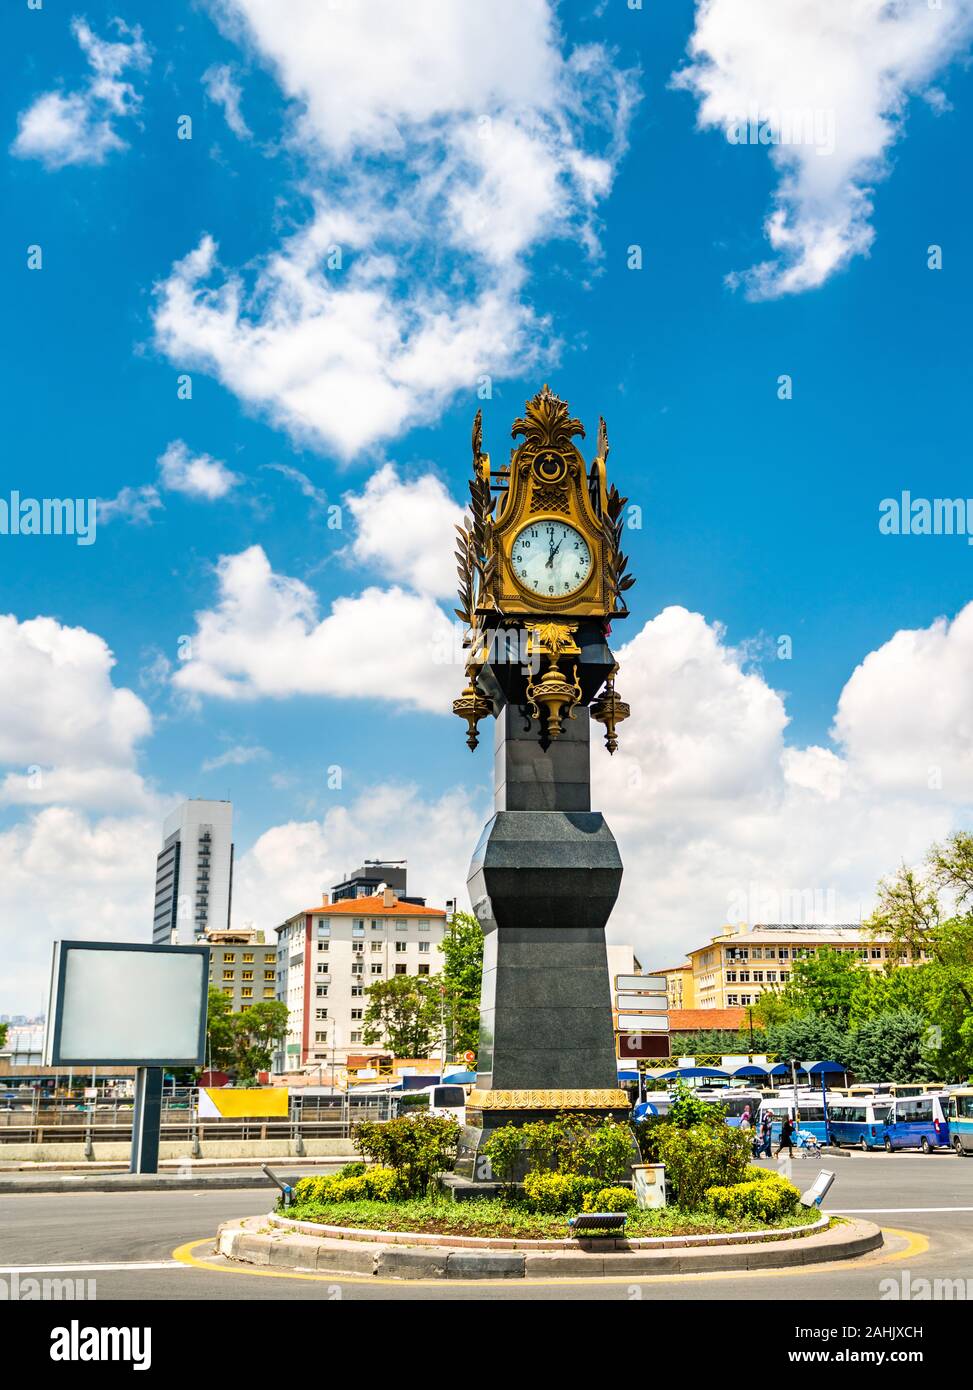 Clock tower in Ankara, Turkey Stock Photo